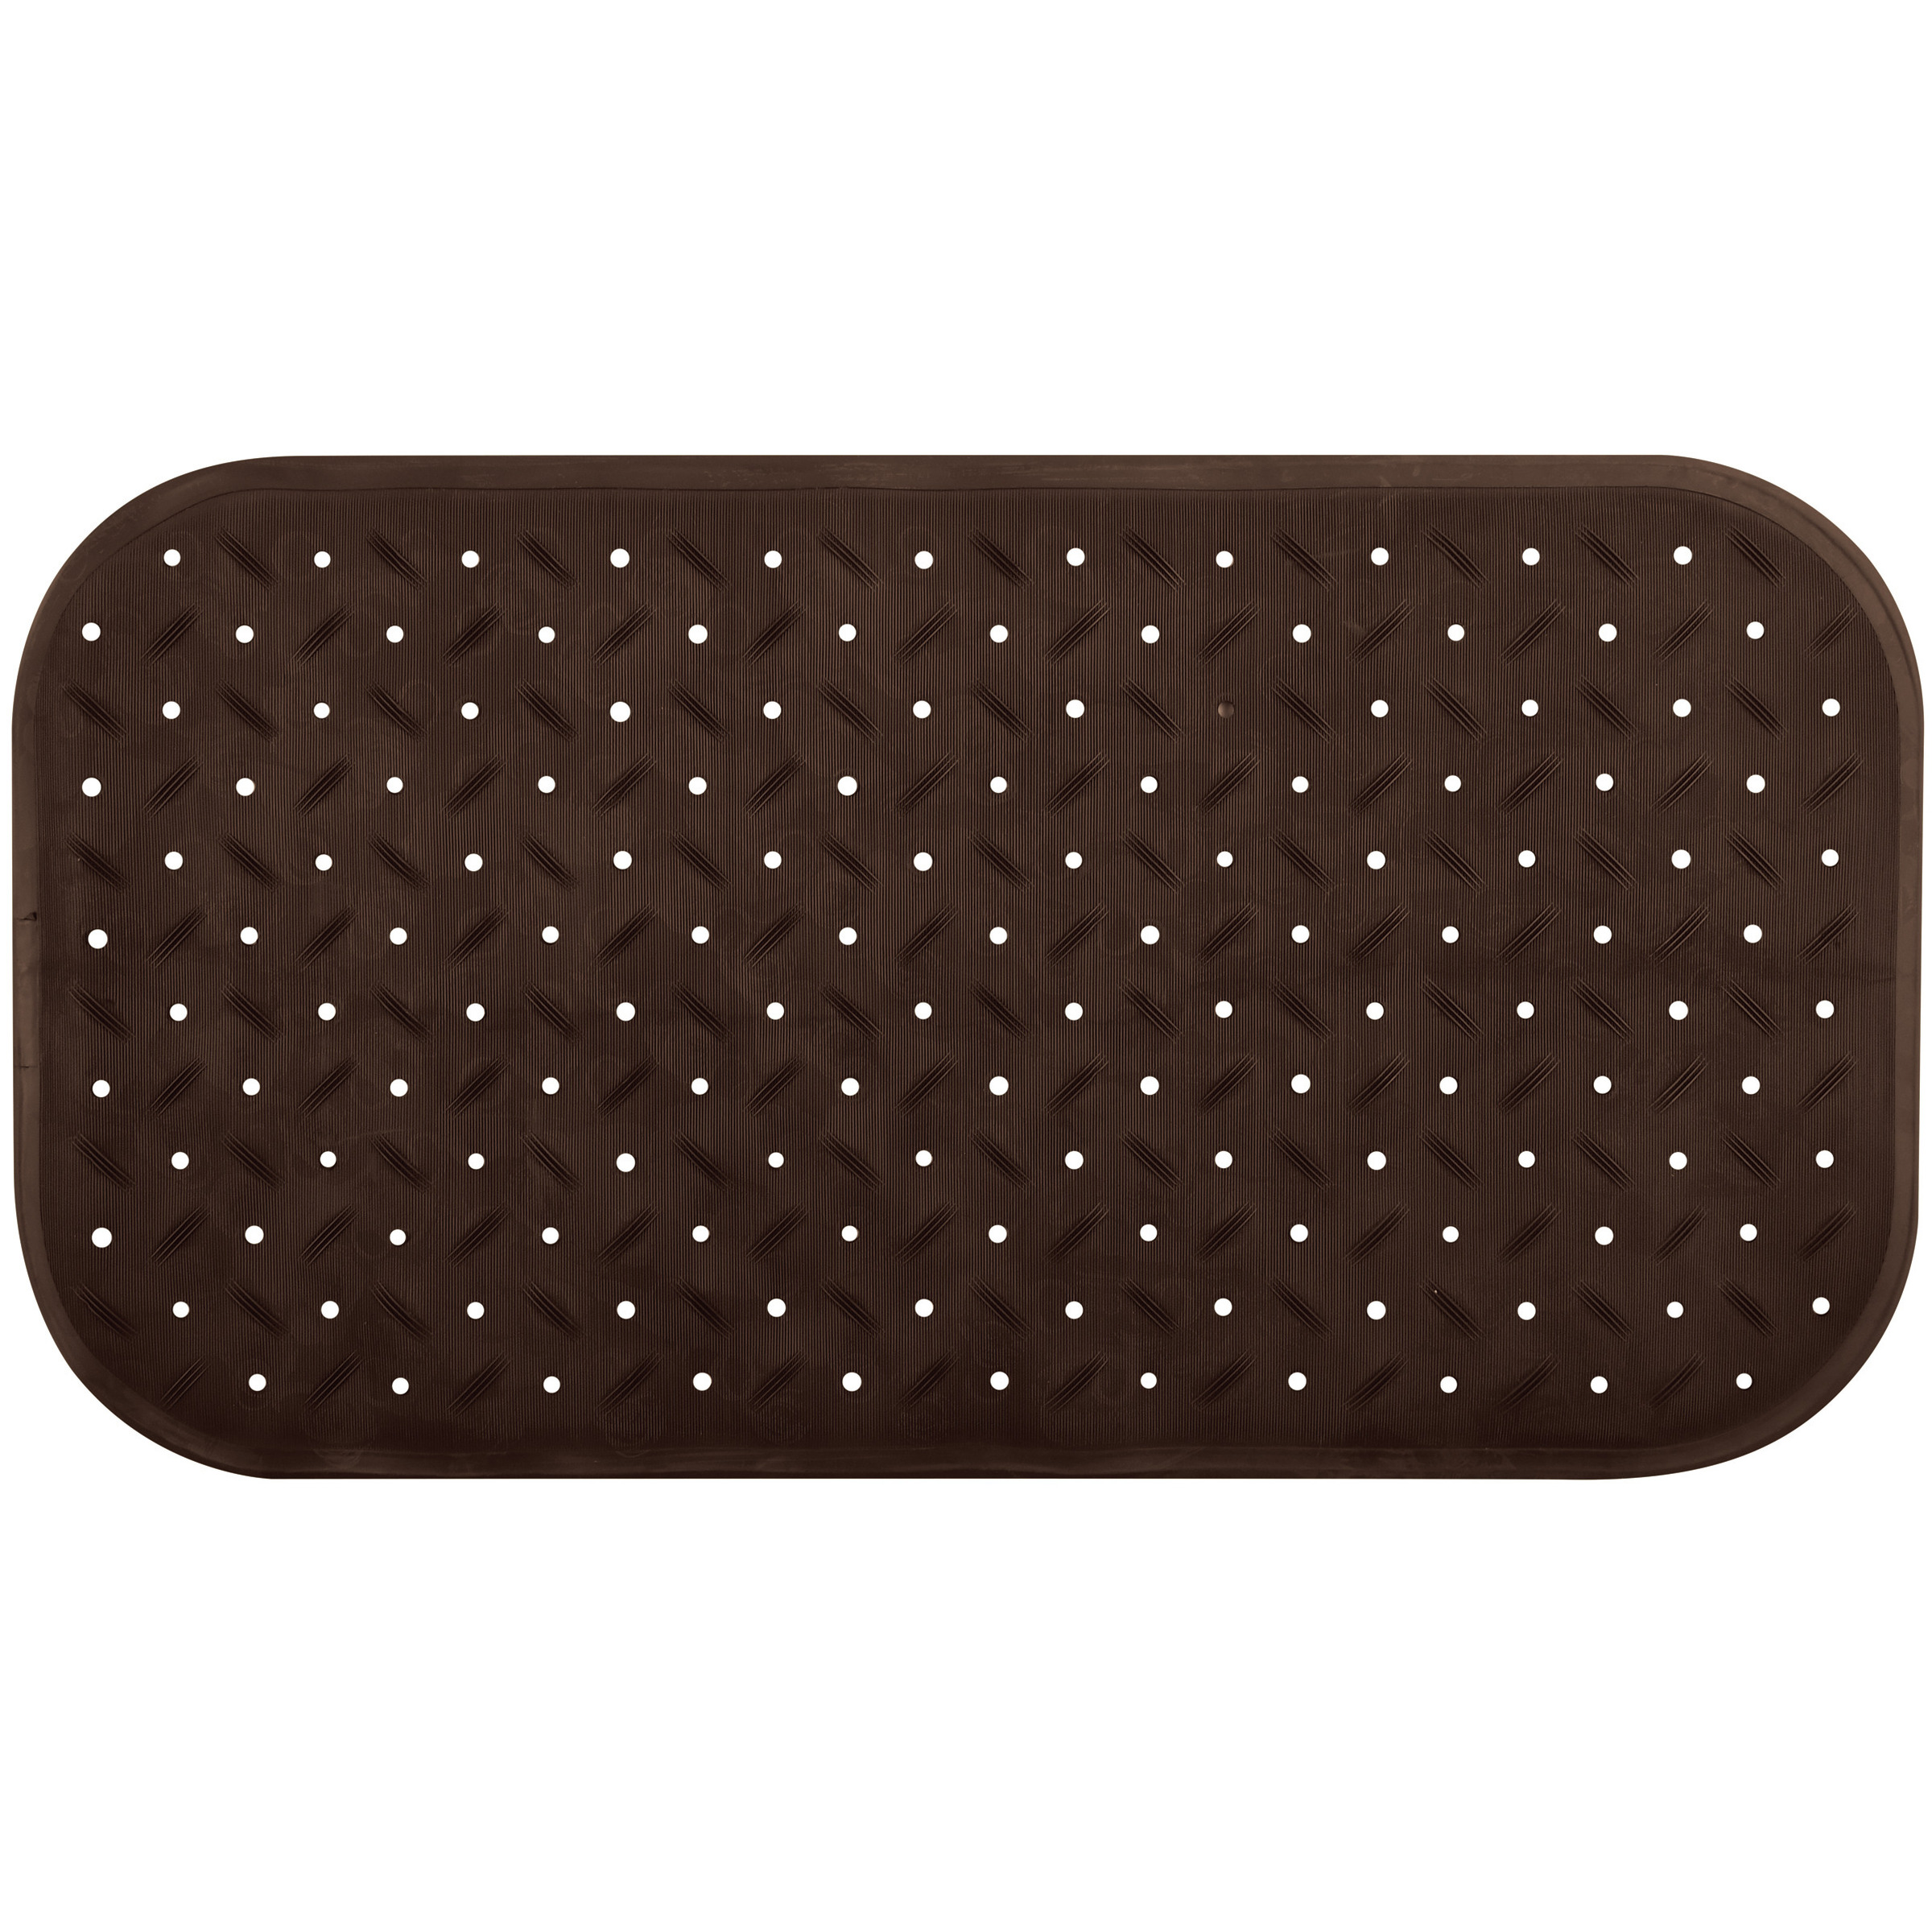 Douche-bad anti-slip mat badkamer rubber bruin 36 x 65 cm rechthoek